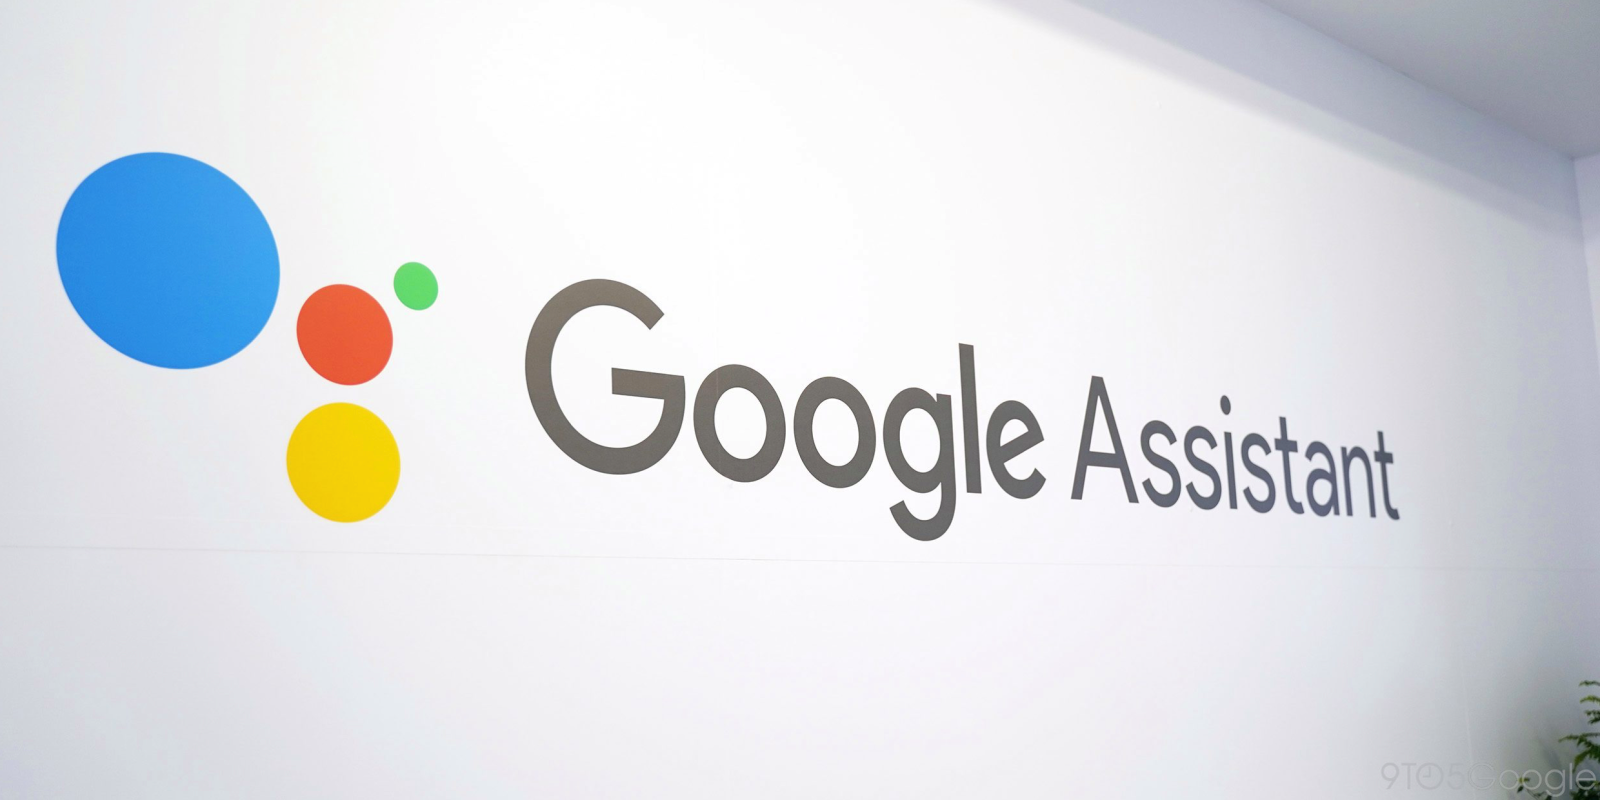 Google Assistant tilbyder officiel dokumentation og indbygget support til tv og andre enheder: Ændring af kanaler og andre kontroller med din stemme lettere